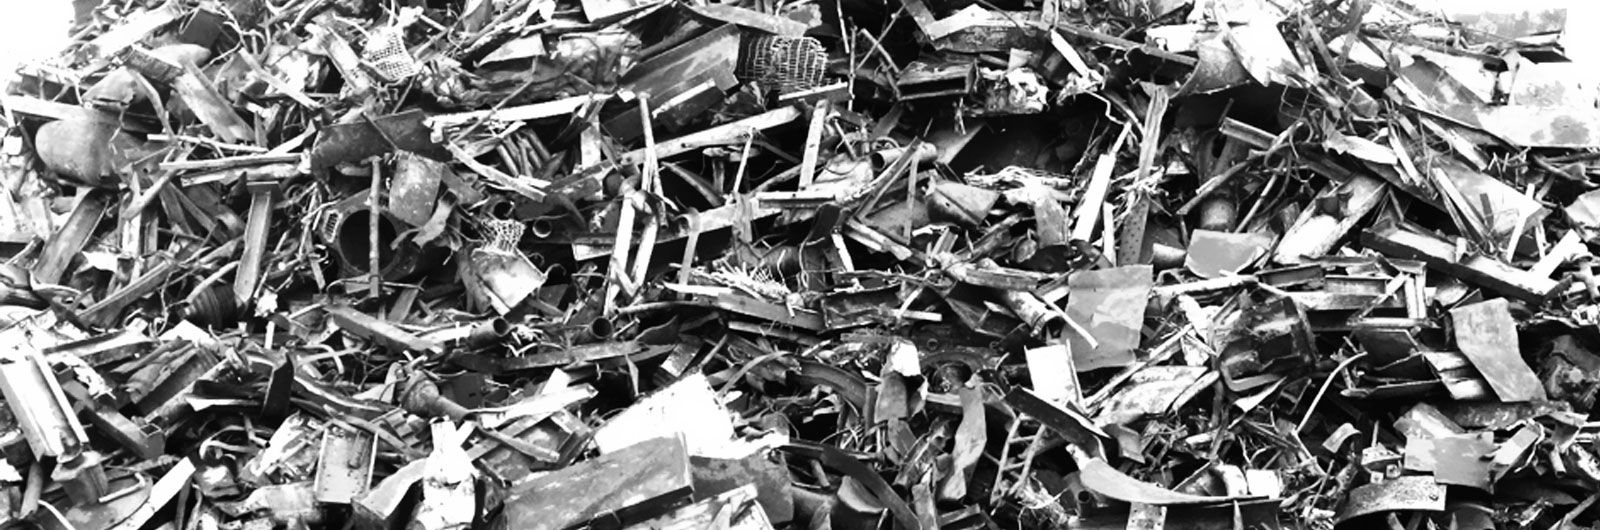 Recuperaciones Gil Benavent escombros de reciclaje blanco y negro